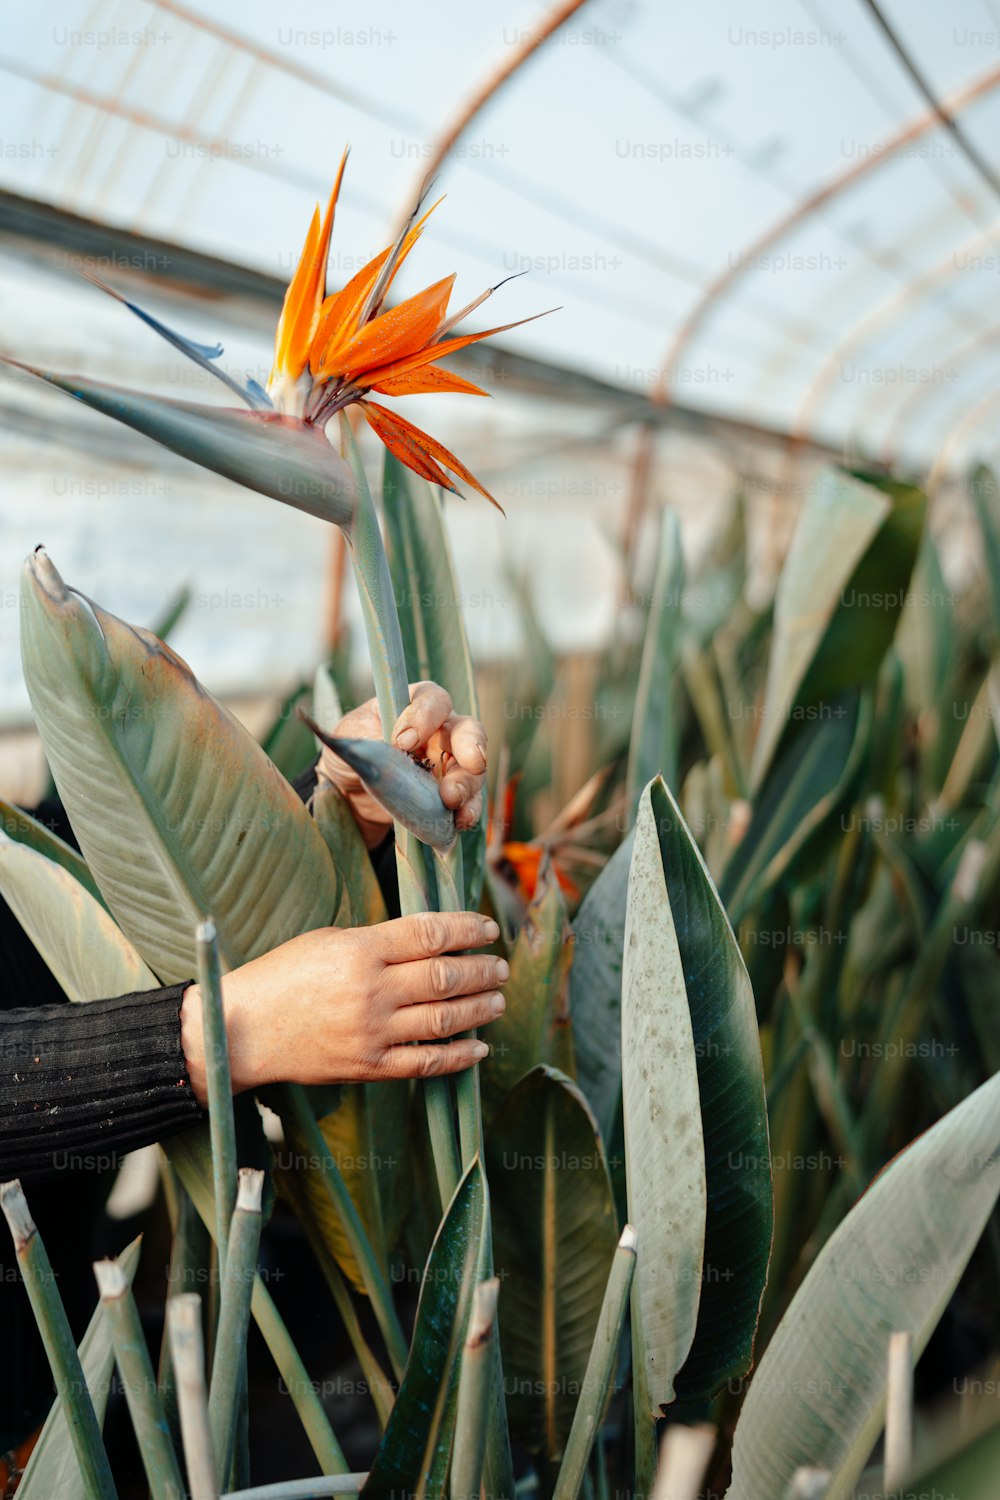 Una persona sosteniendo una planta de ave del paraíso en un invernadero